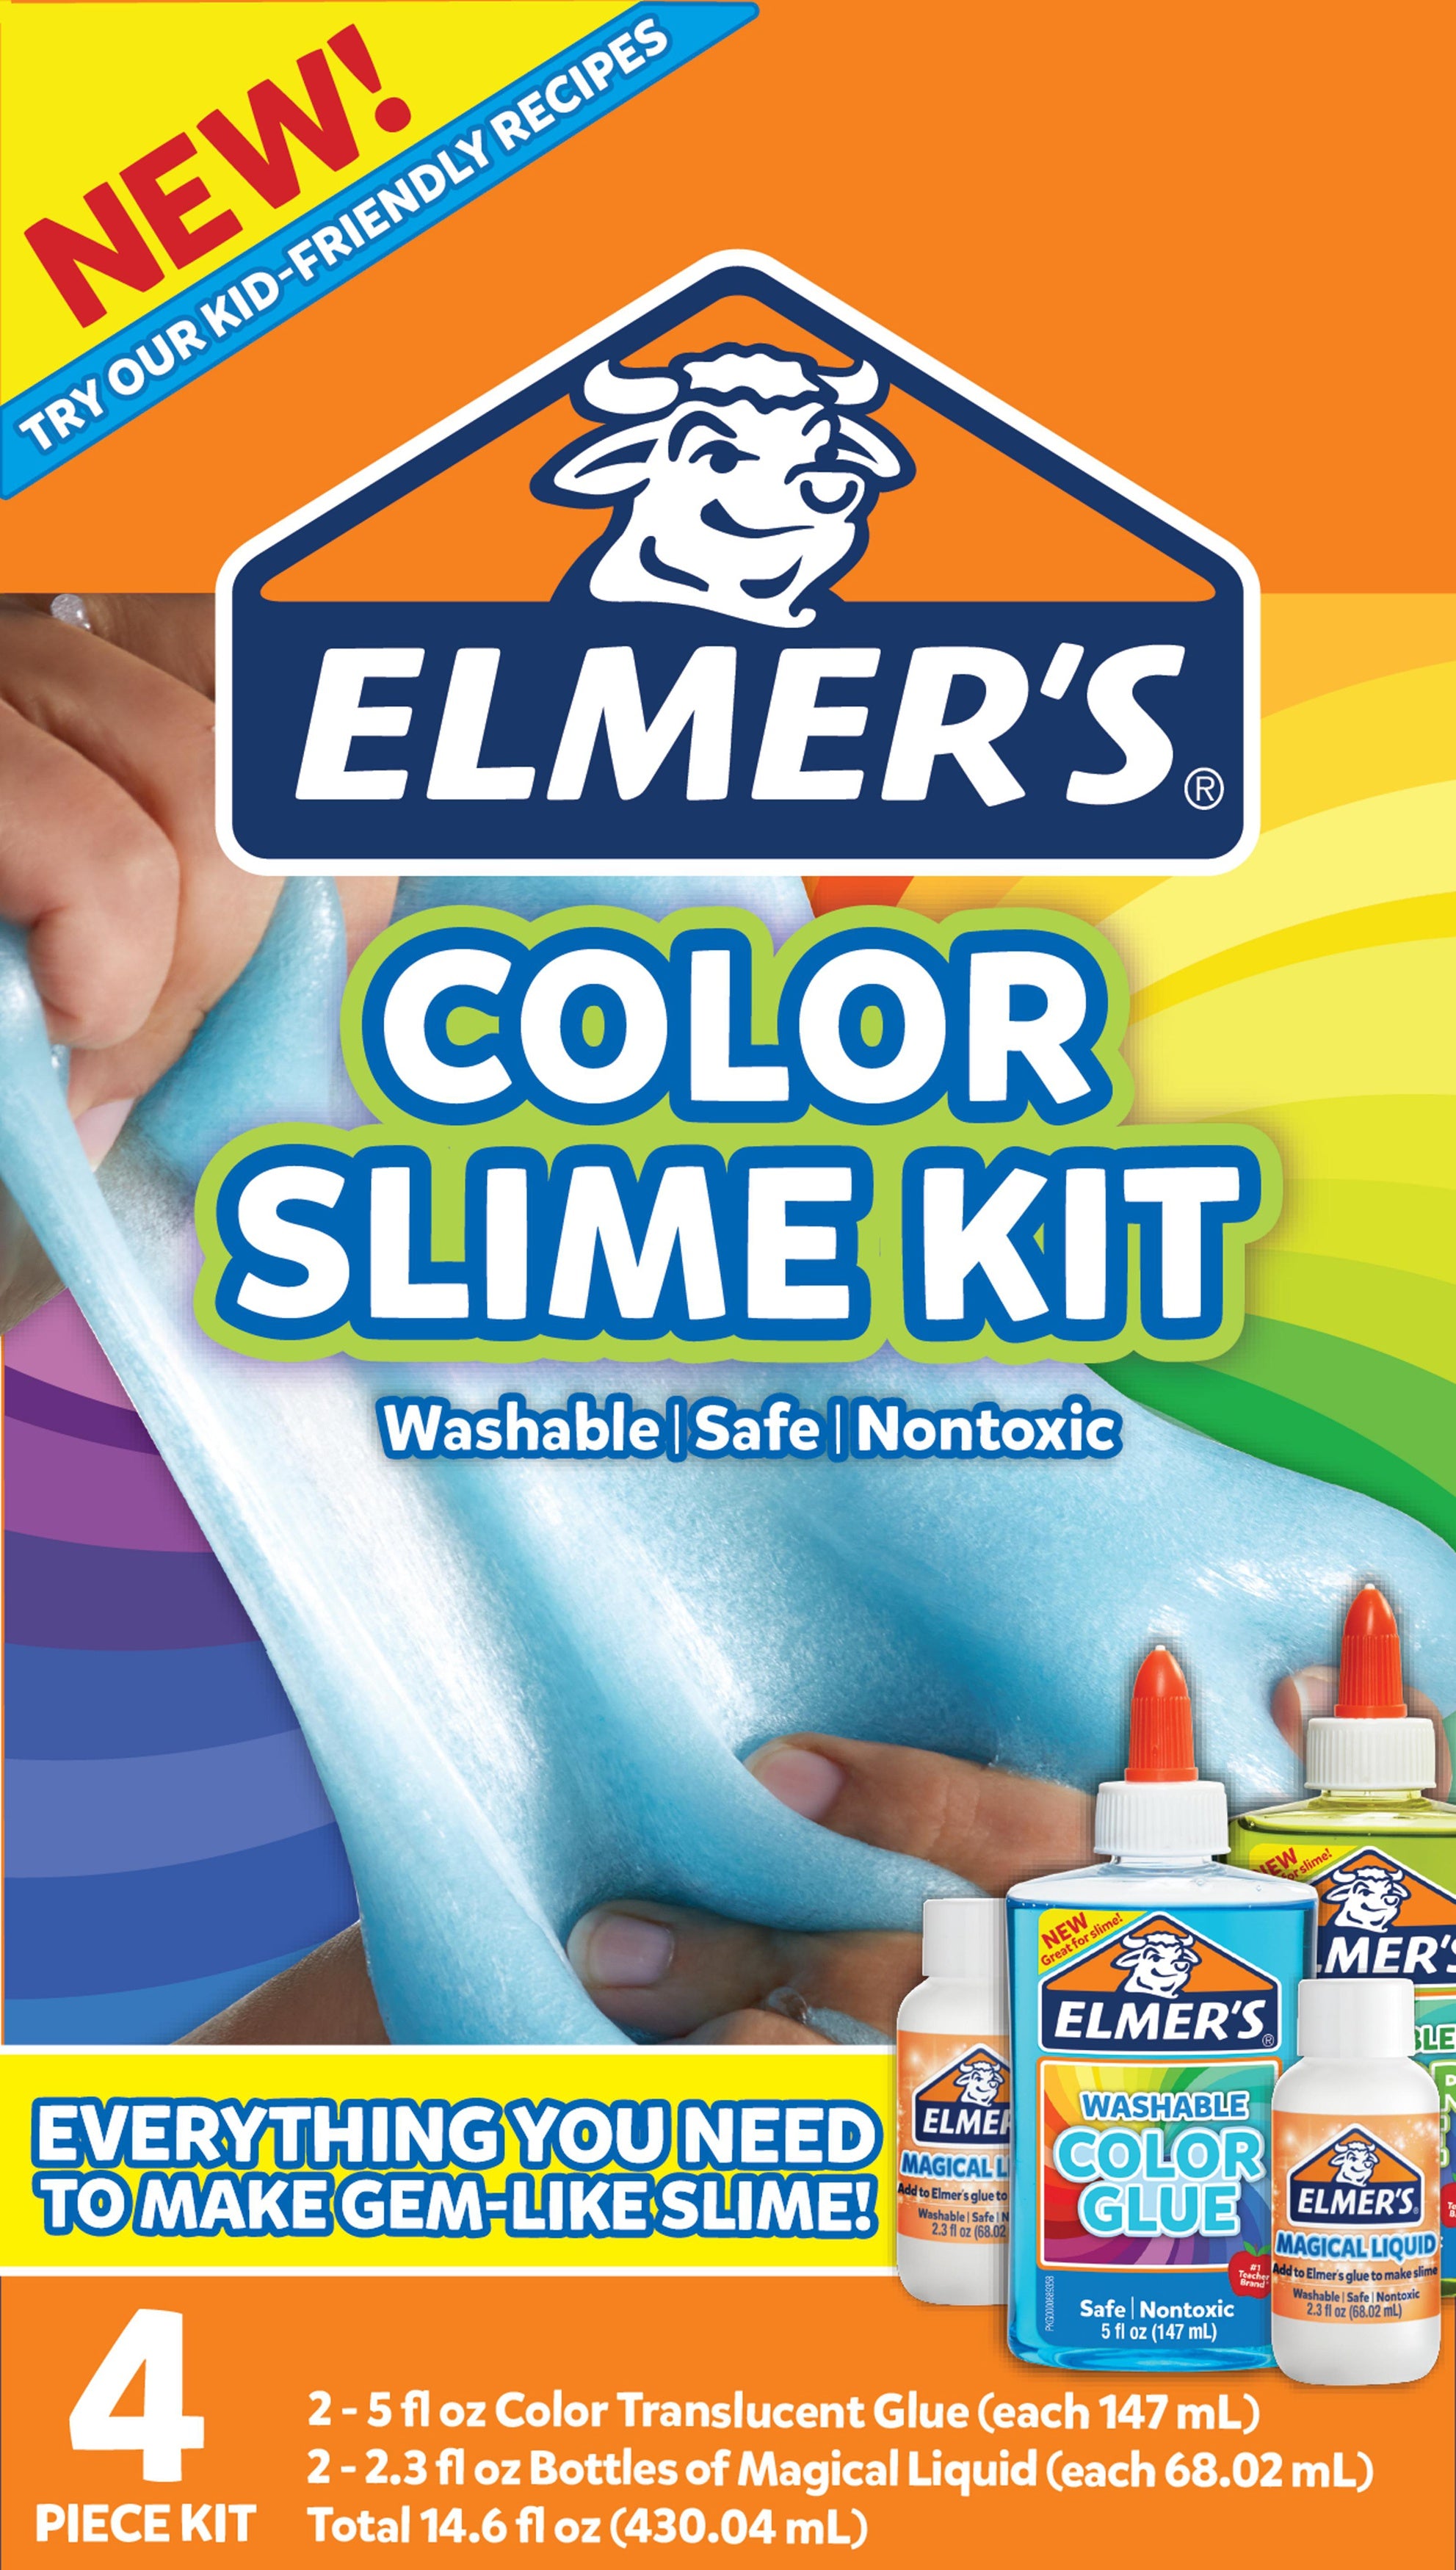 Elmers Glue Slime Kits – Make It Artfull